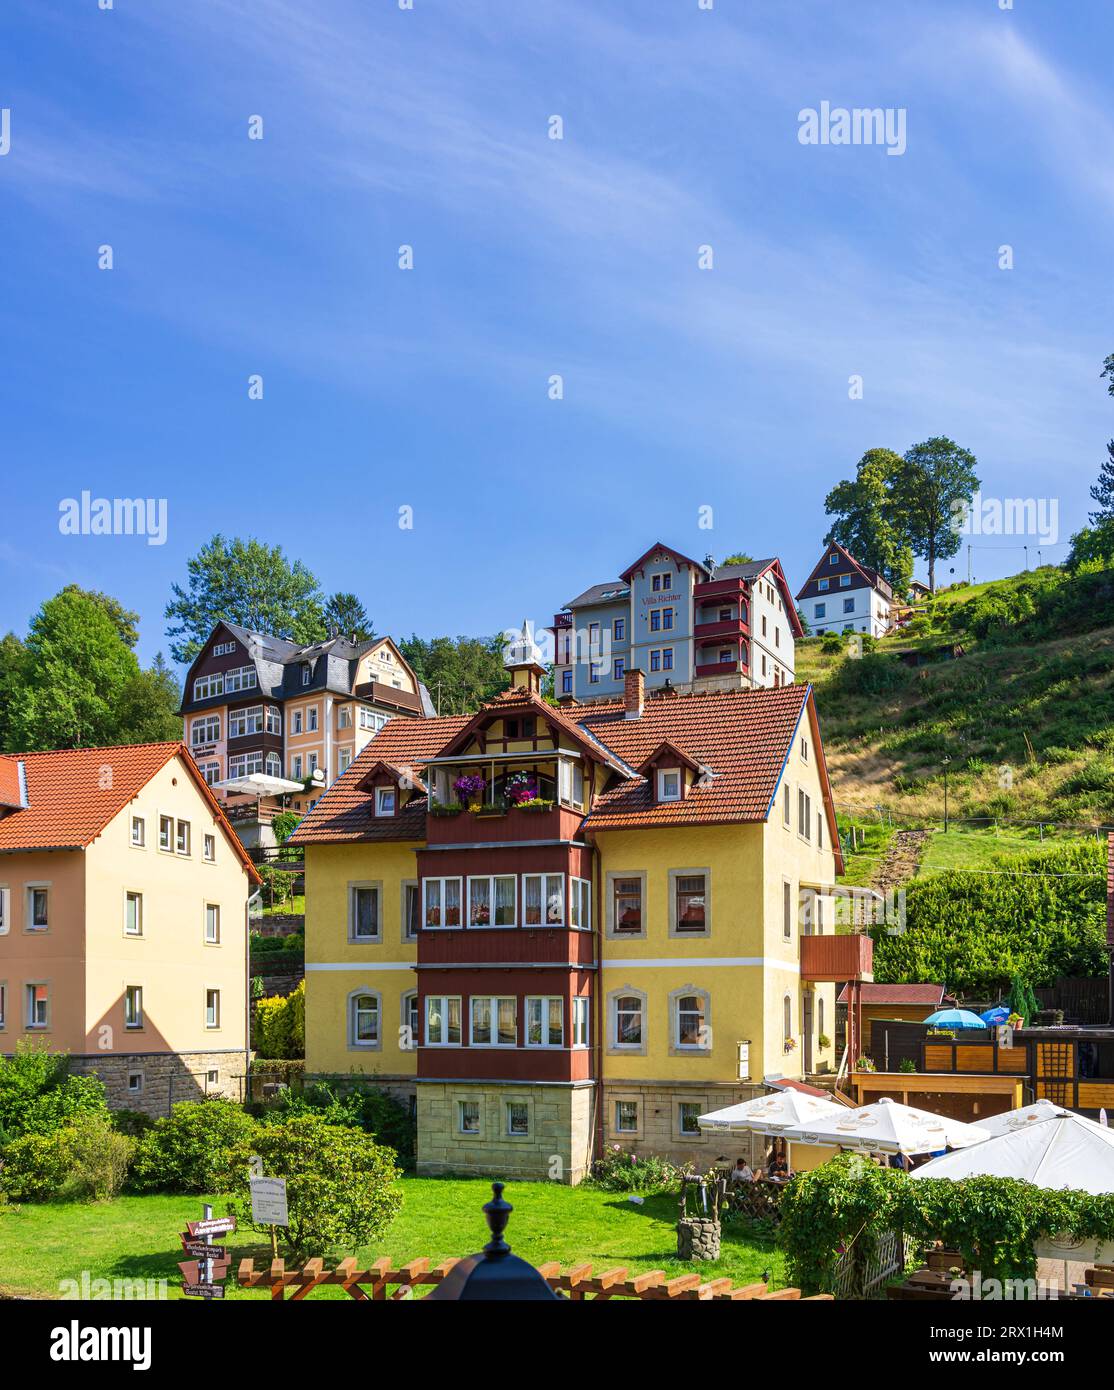 Situato in una posizione pittoresca nella principale area turistica delle montagne di arenaria dell'Elba, la città termale di Rathen, Svizzera sassone, Germania. Foto Stock